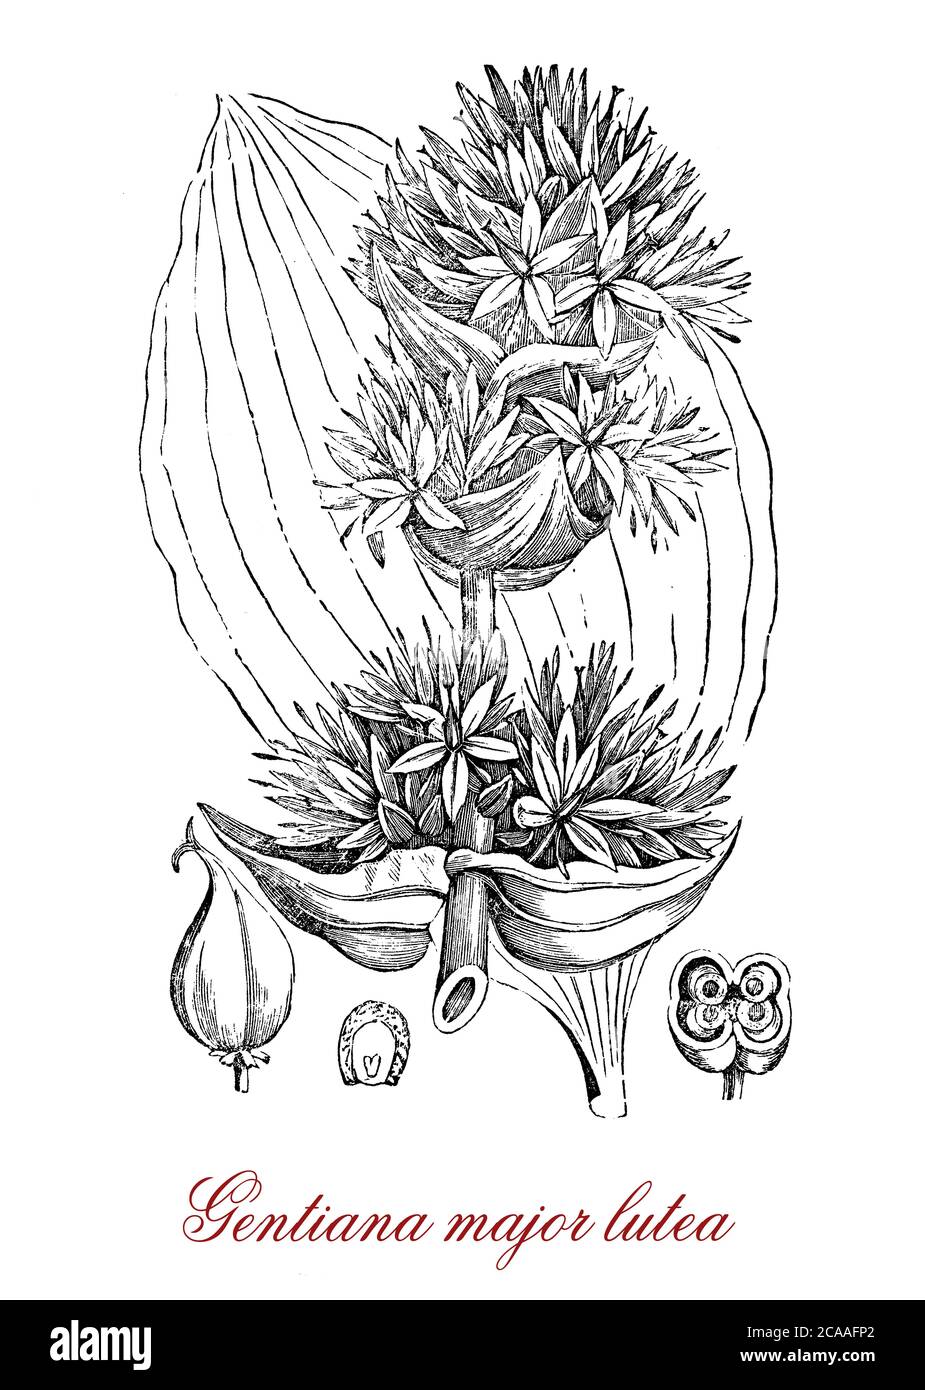 Gentiana lutea majeure ou gentiane jaune est une plante alpine à fleurs jaunes, utilisée en médecine de fines herbes et comme digestif amer Banque D'Images